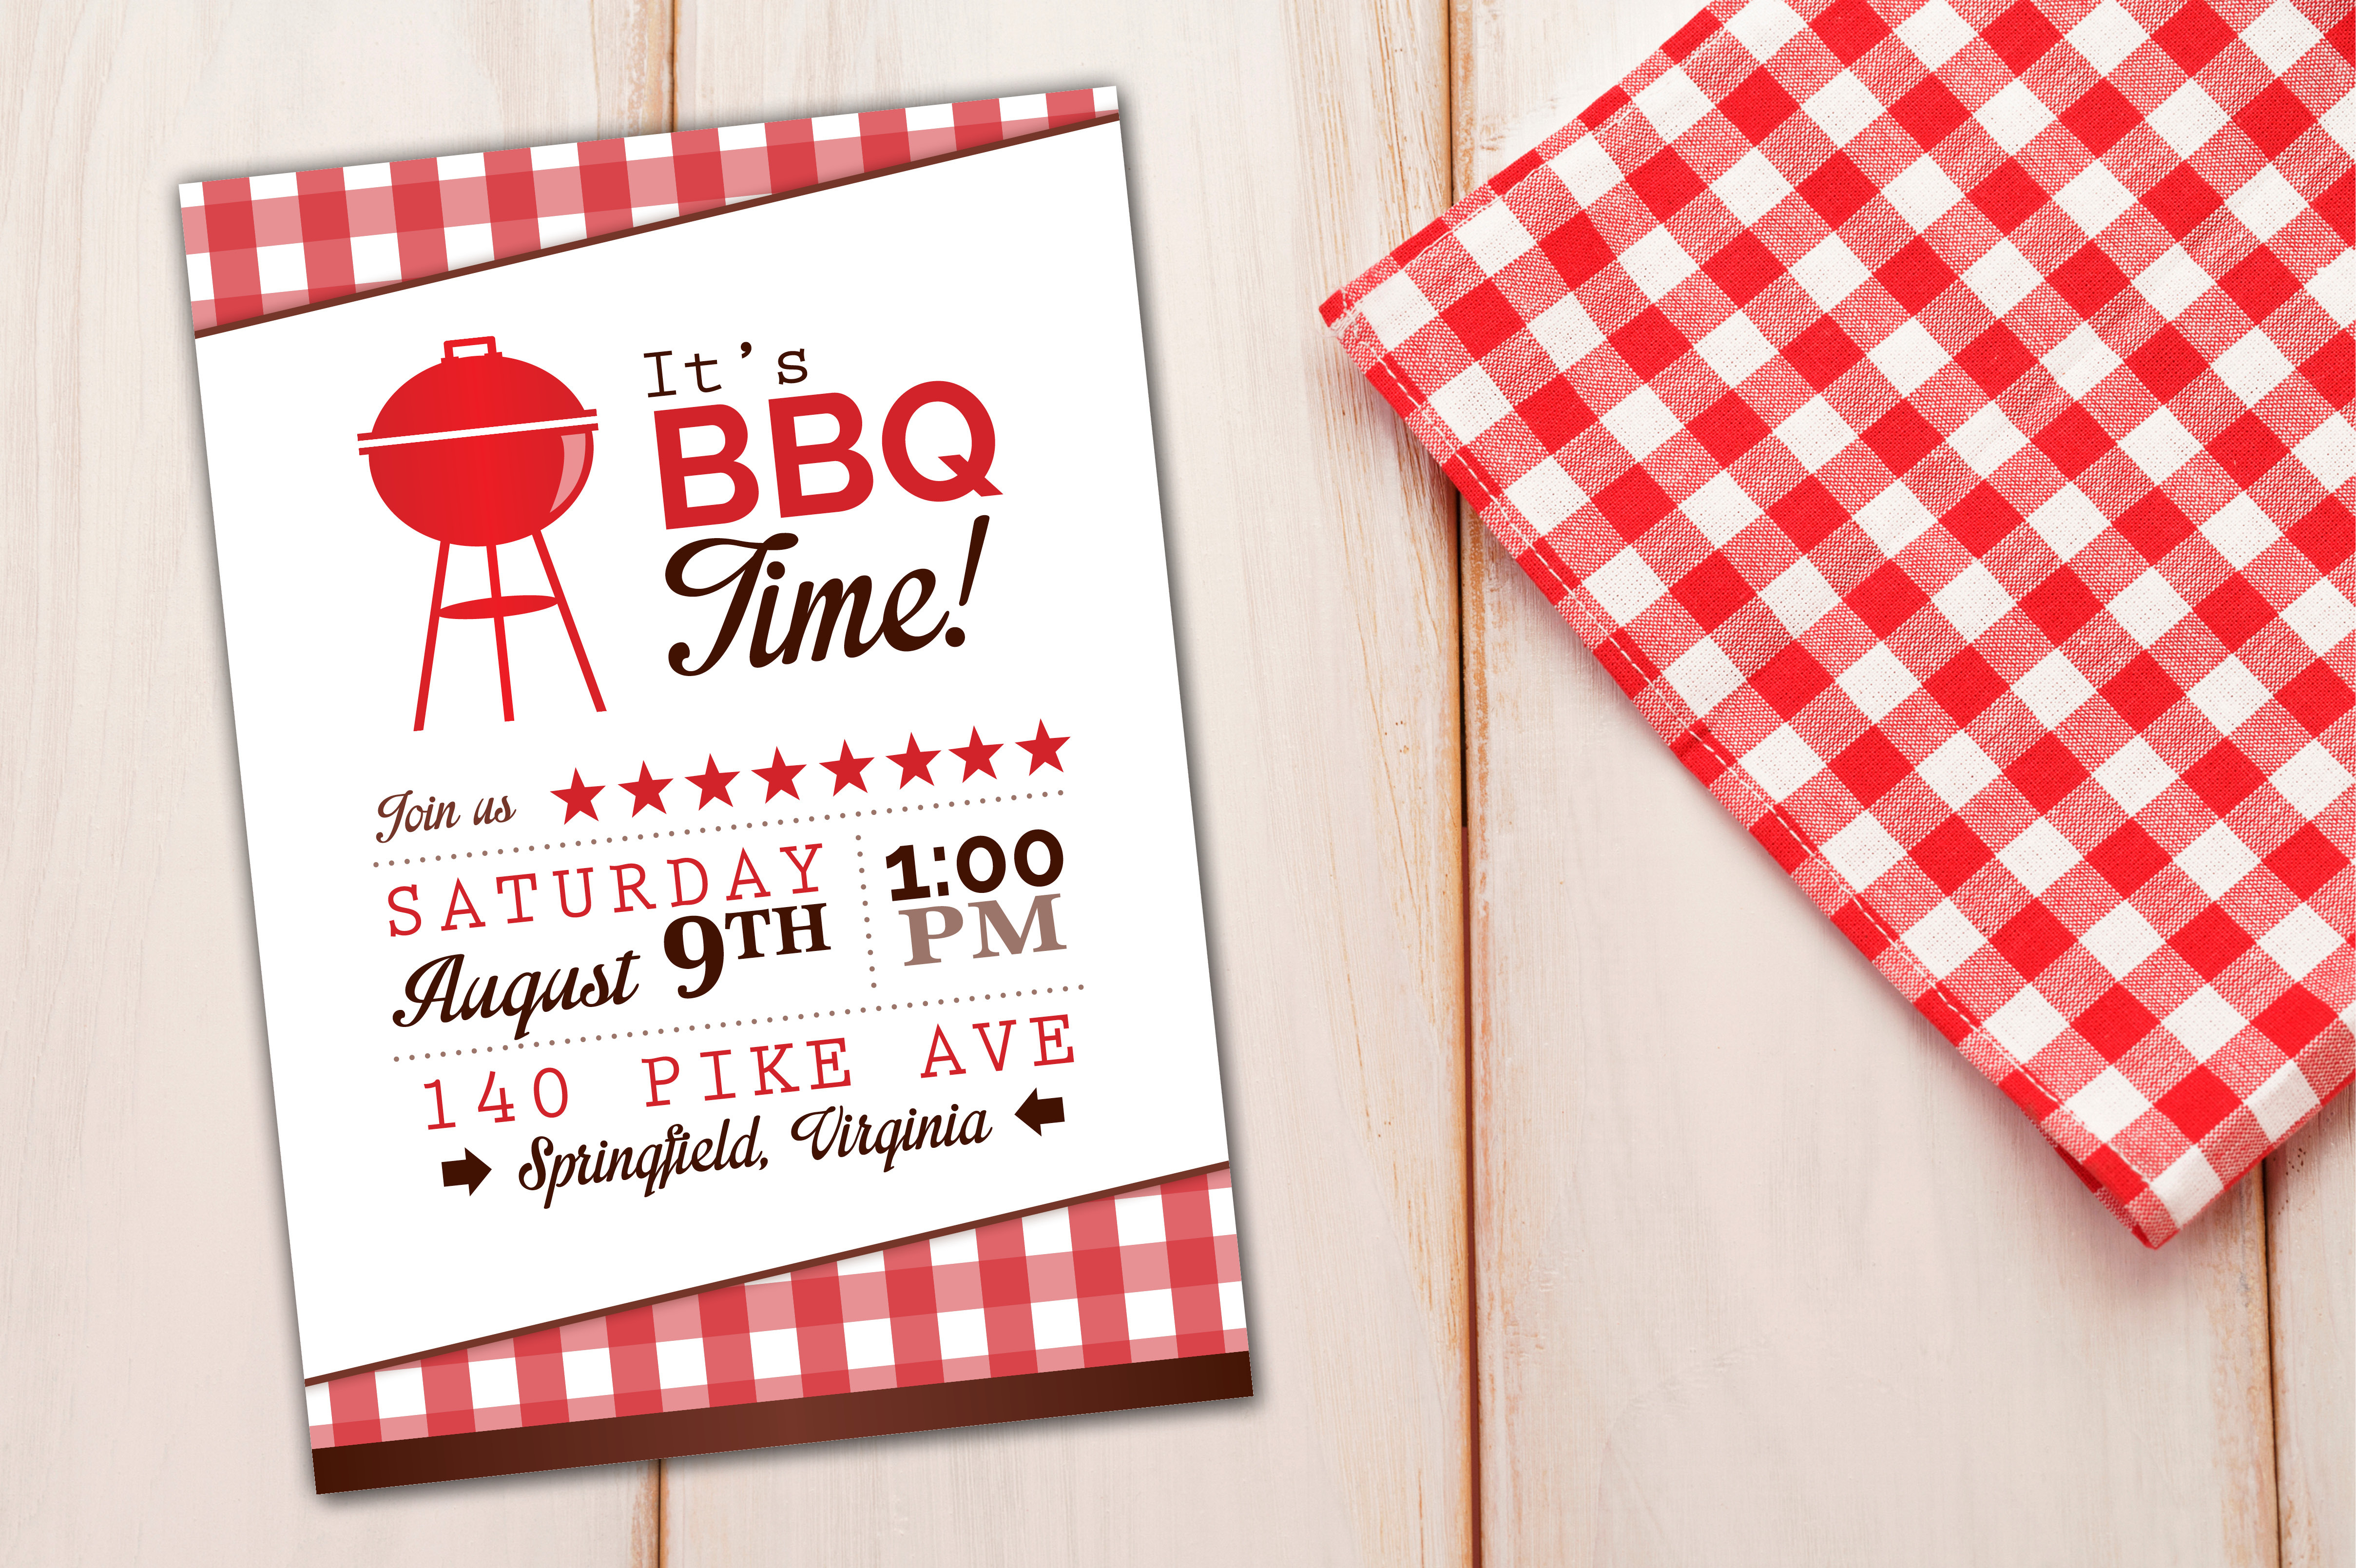 It's BBQ Barbeque Time Invitation Invitation Templates Creative Market